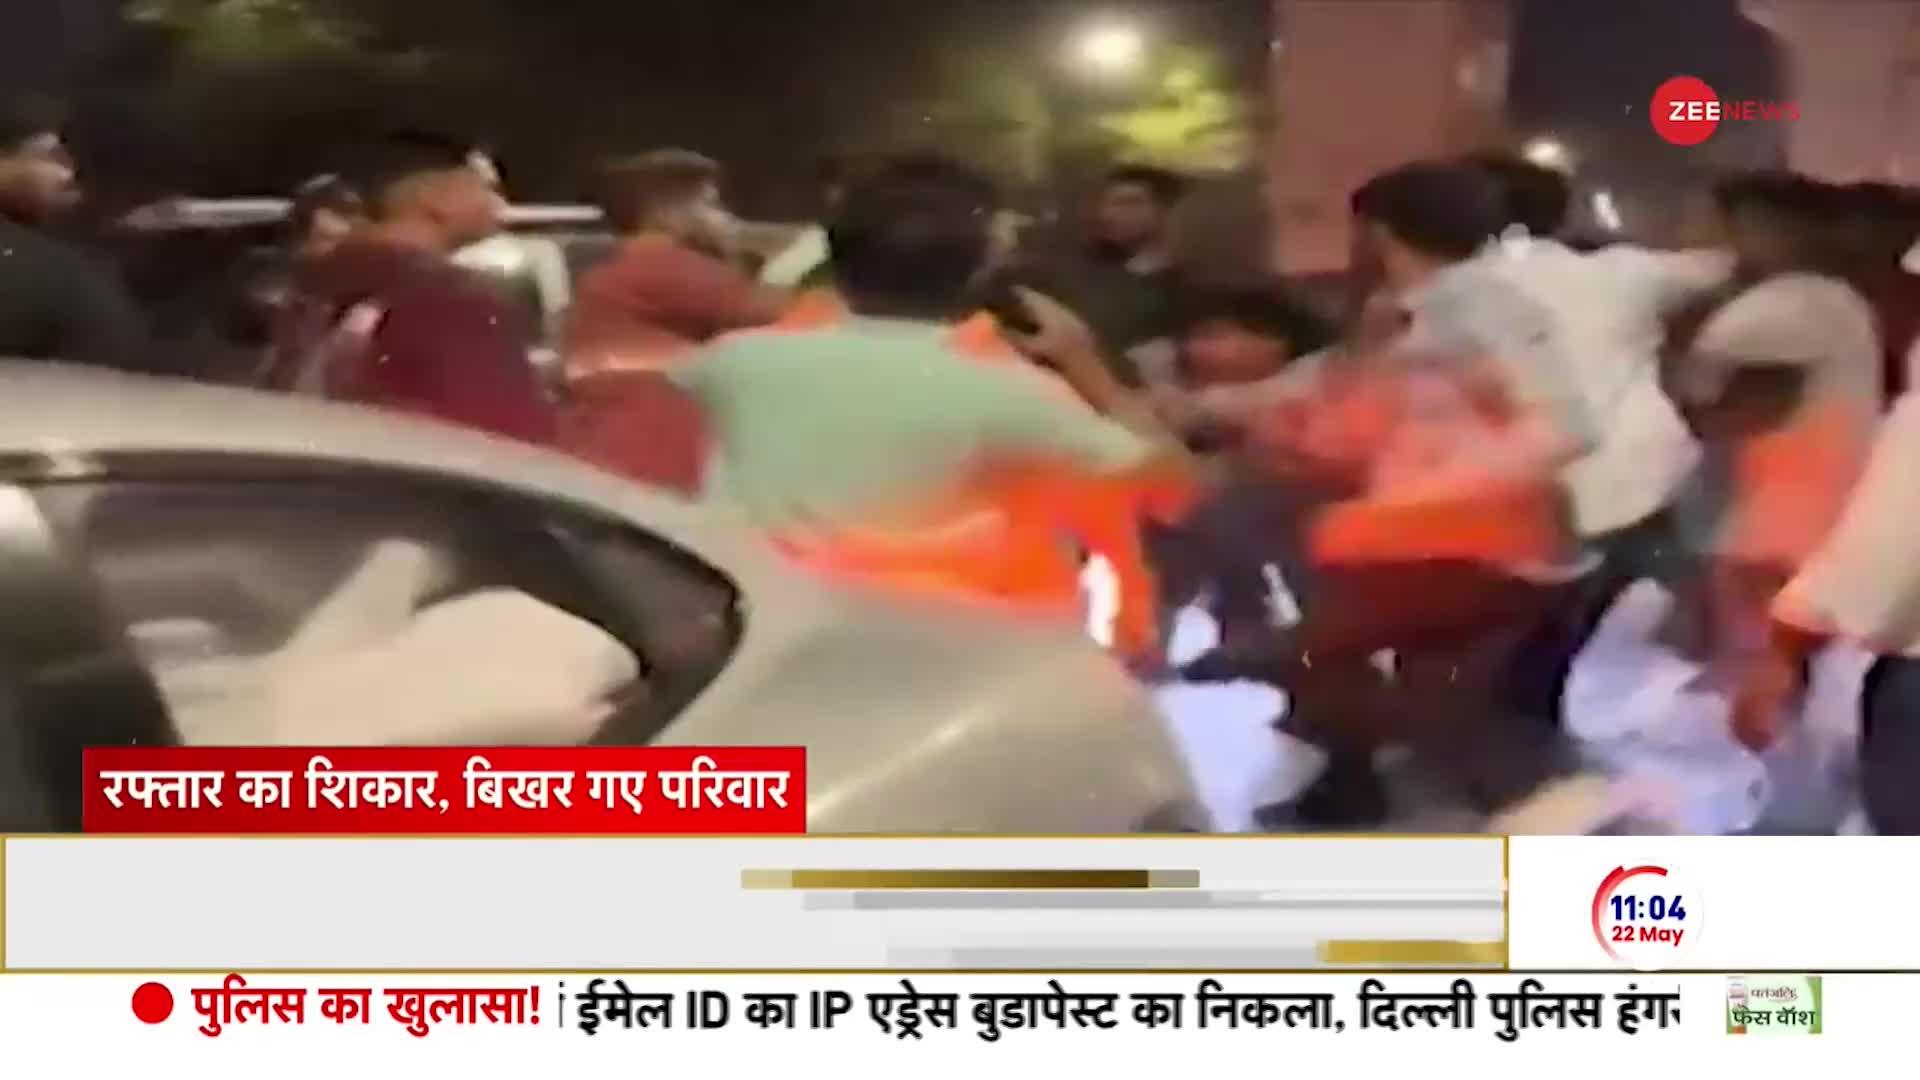 Police on Pune Teen's Porsche Car Crash: हिट एंड रन केस मामले में अनीश और अश्विनी को कब मिलेगा इंसाफ?